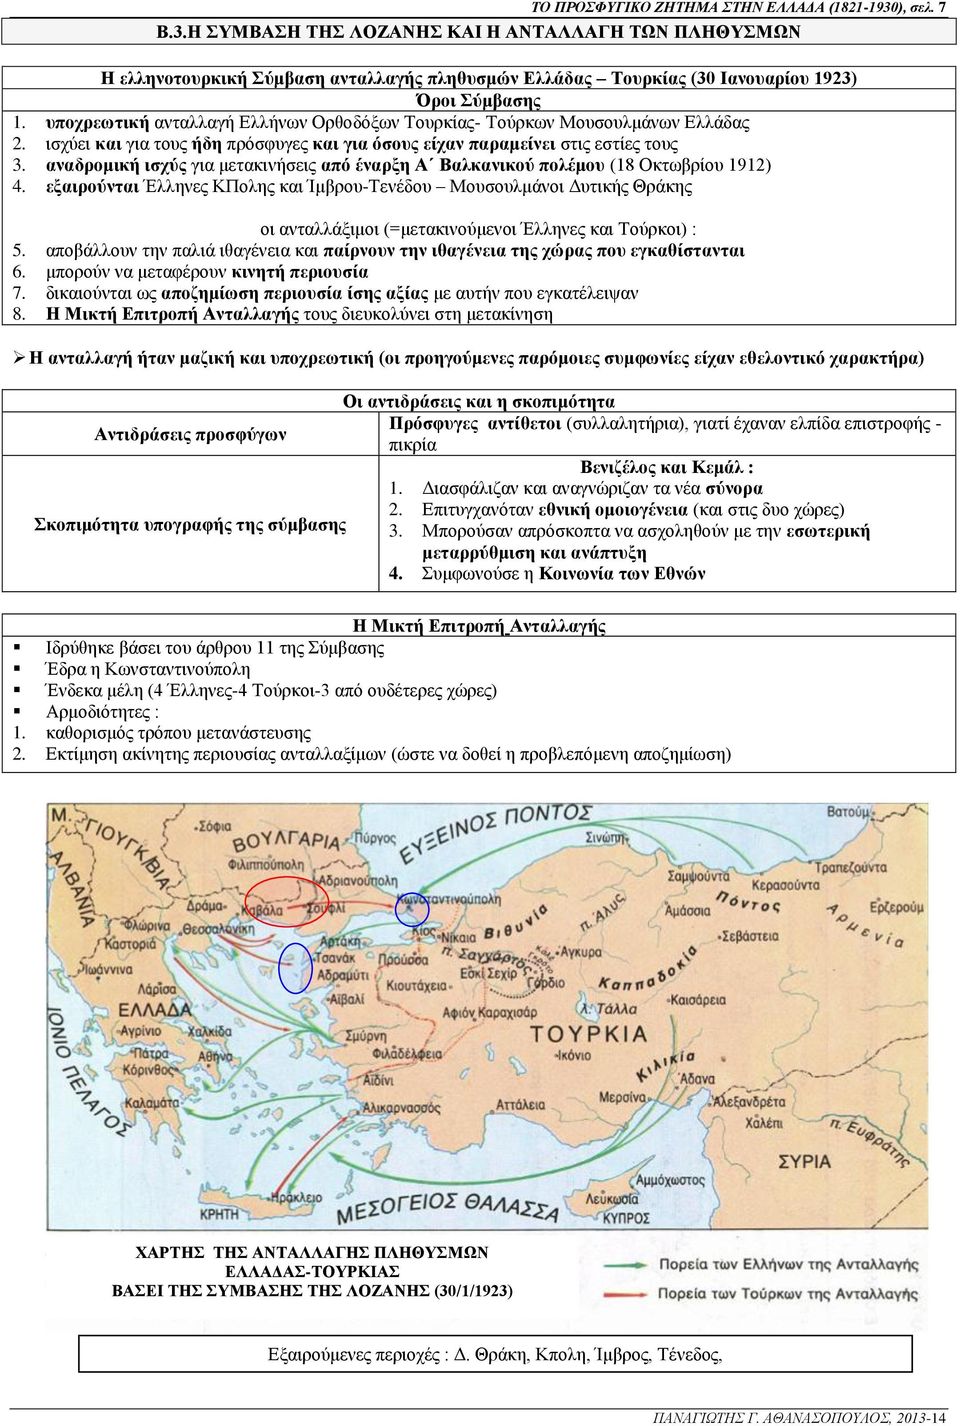 αναδρομική ισχύς για μετακινήσεις από έναρξη Α Βαλκανικού πολέμου (18 Οκτωβρίου 1912) 4.